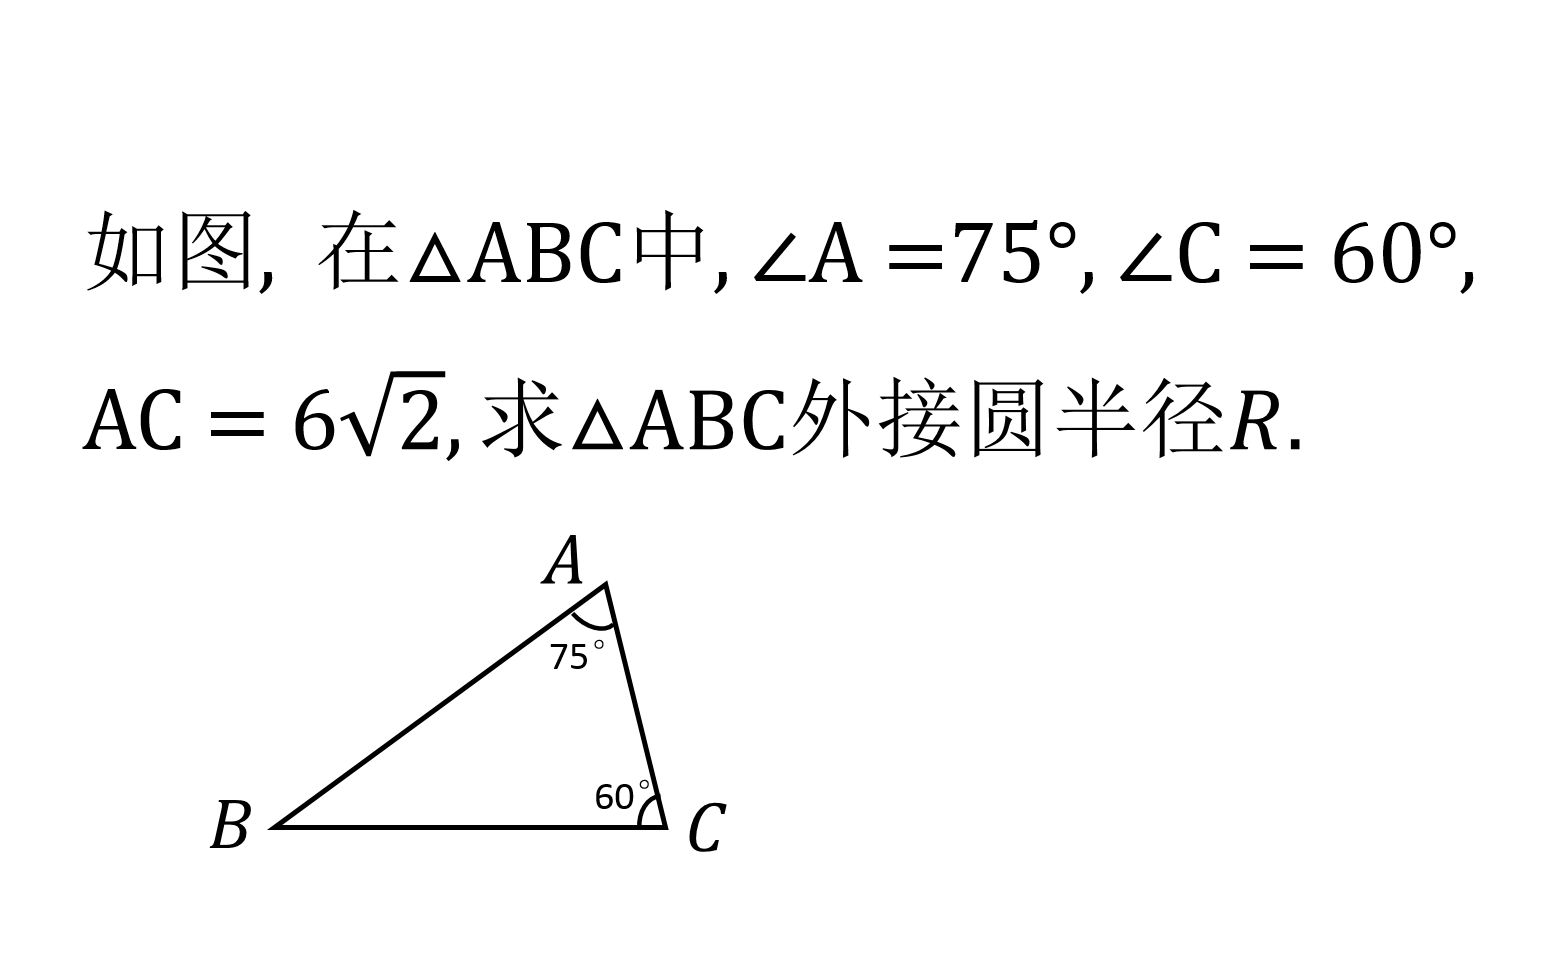 初中数学 知道了三角形的角度和边长 确定外接圆的半径电影 52movs Com